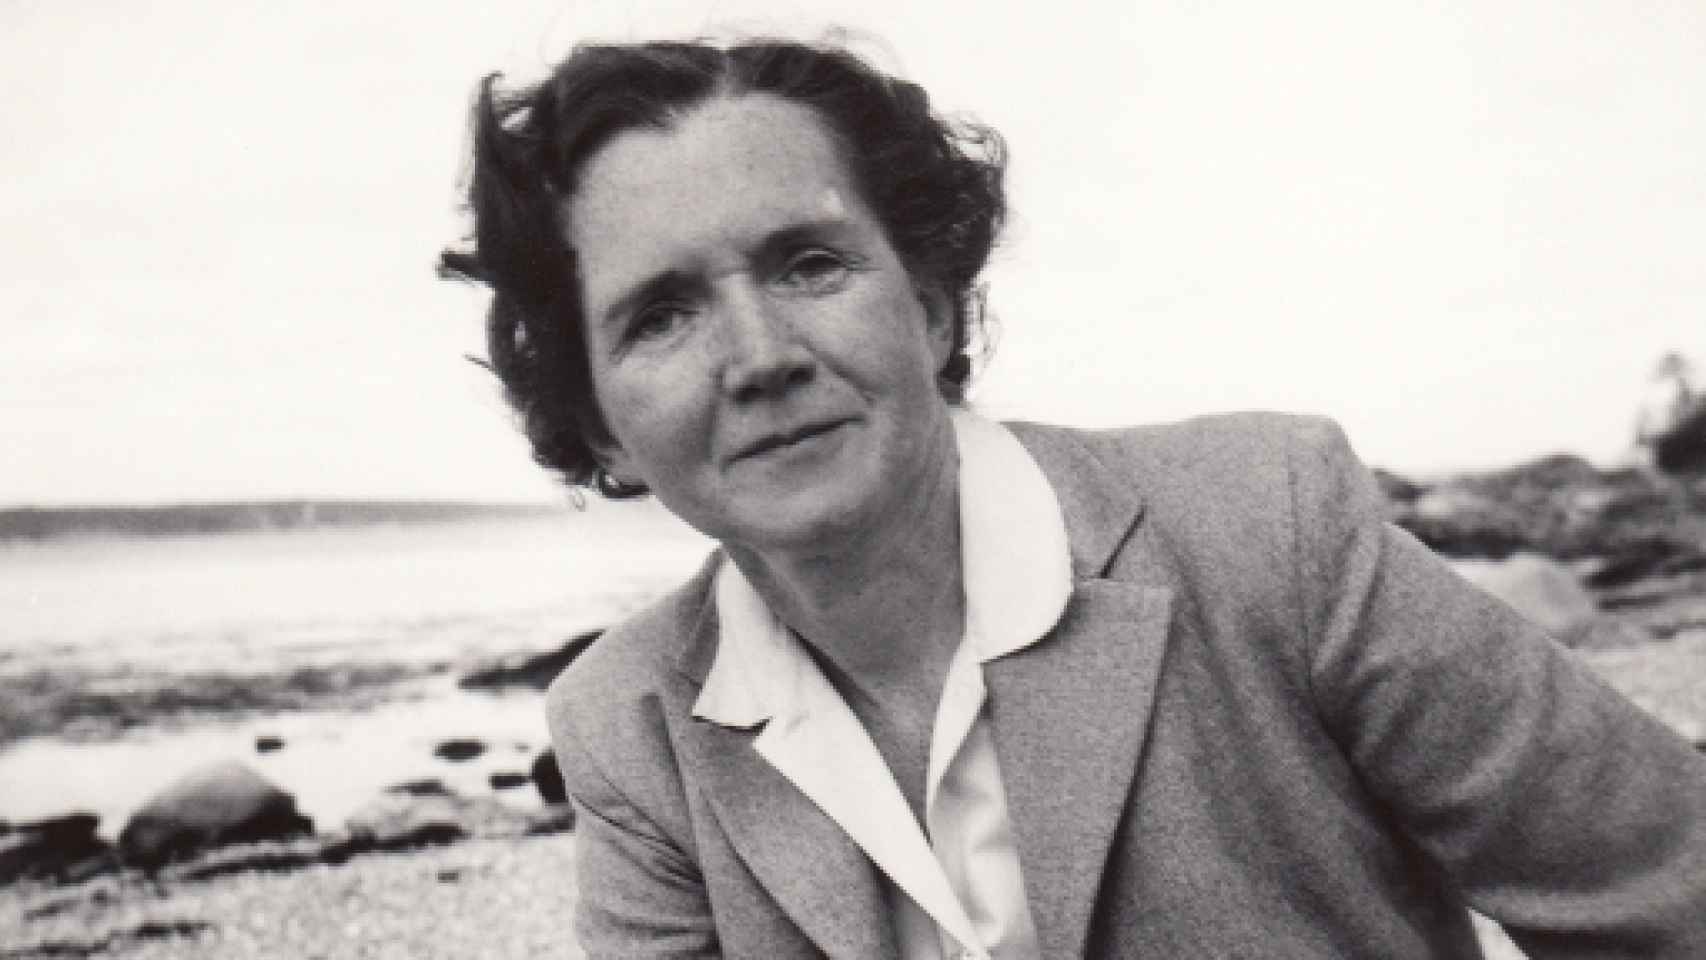 Image: Rachel Carson, bajo el viento oceánico